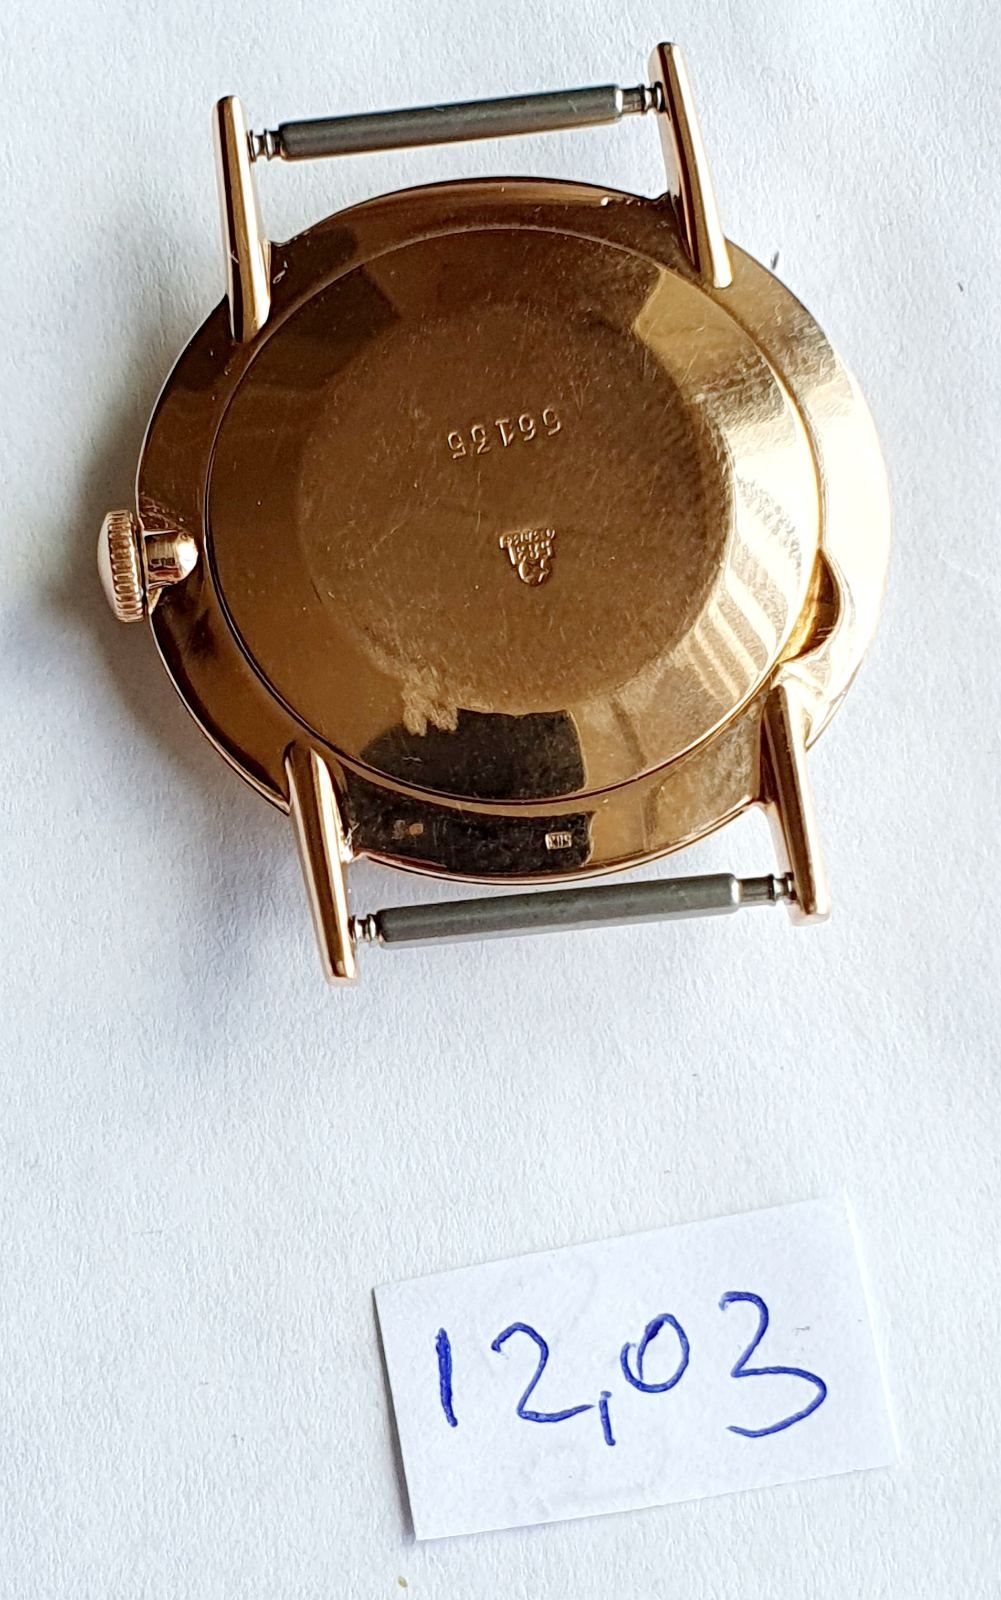 Продам мужские золотые часы производства СССР